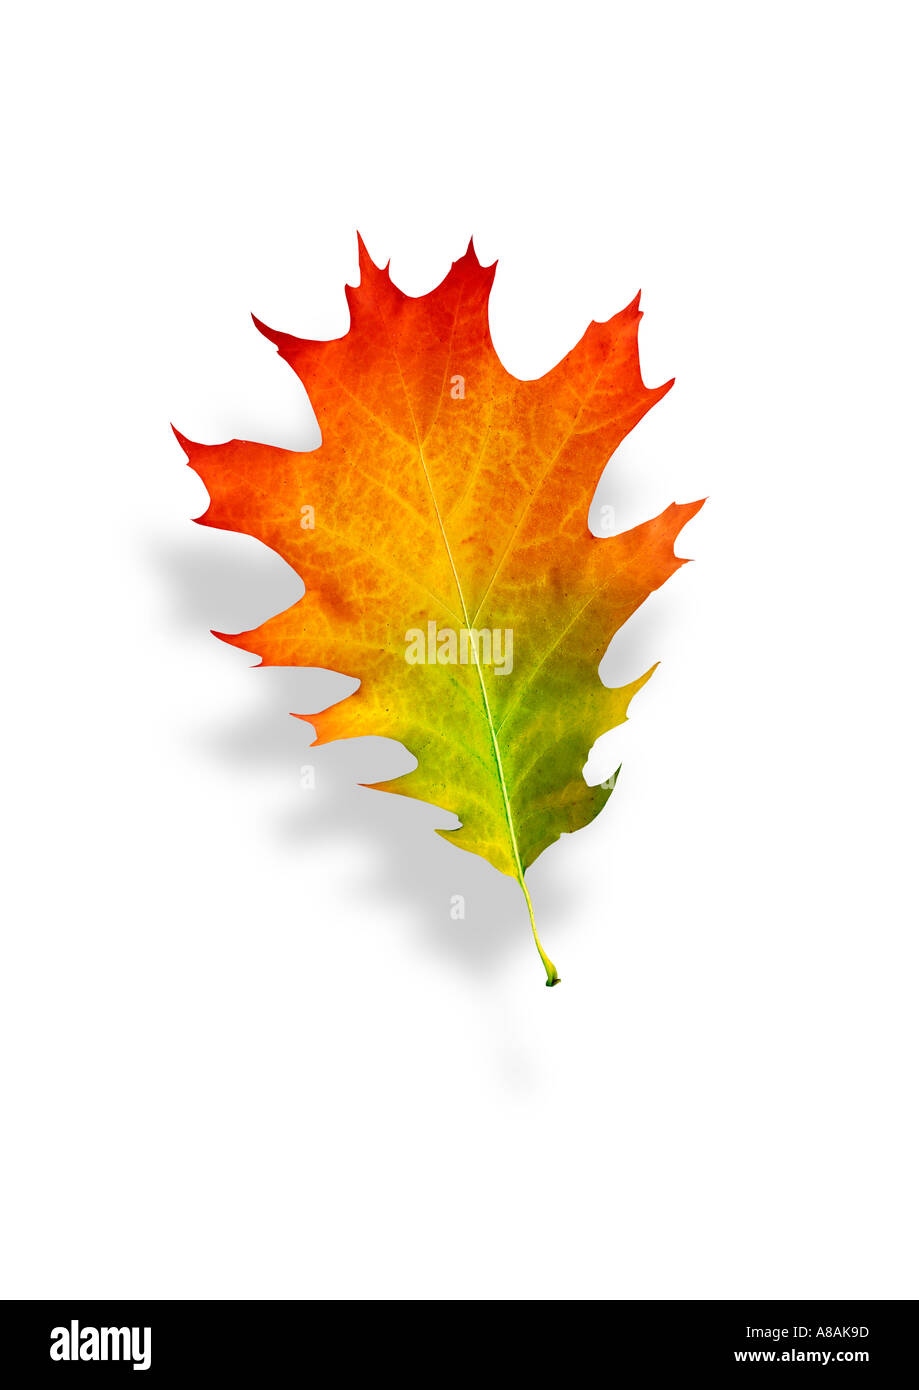 Dettaglio di una quercia lasciare in autunno dettaglio buntes Eichenblatt im Herbst Foto Stock